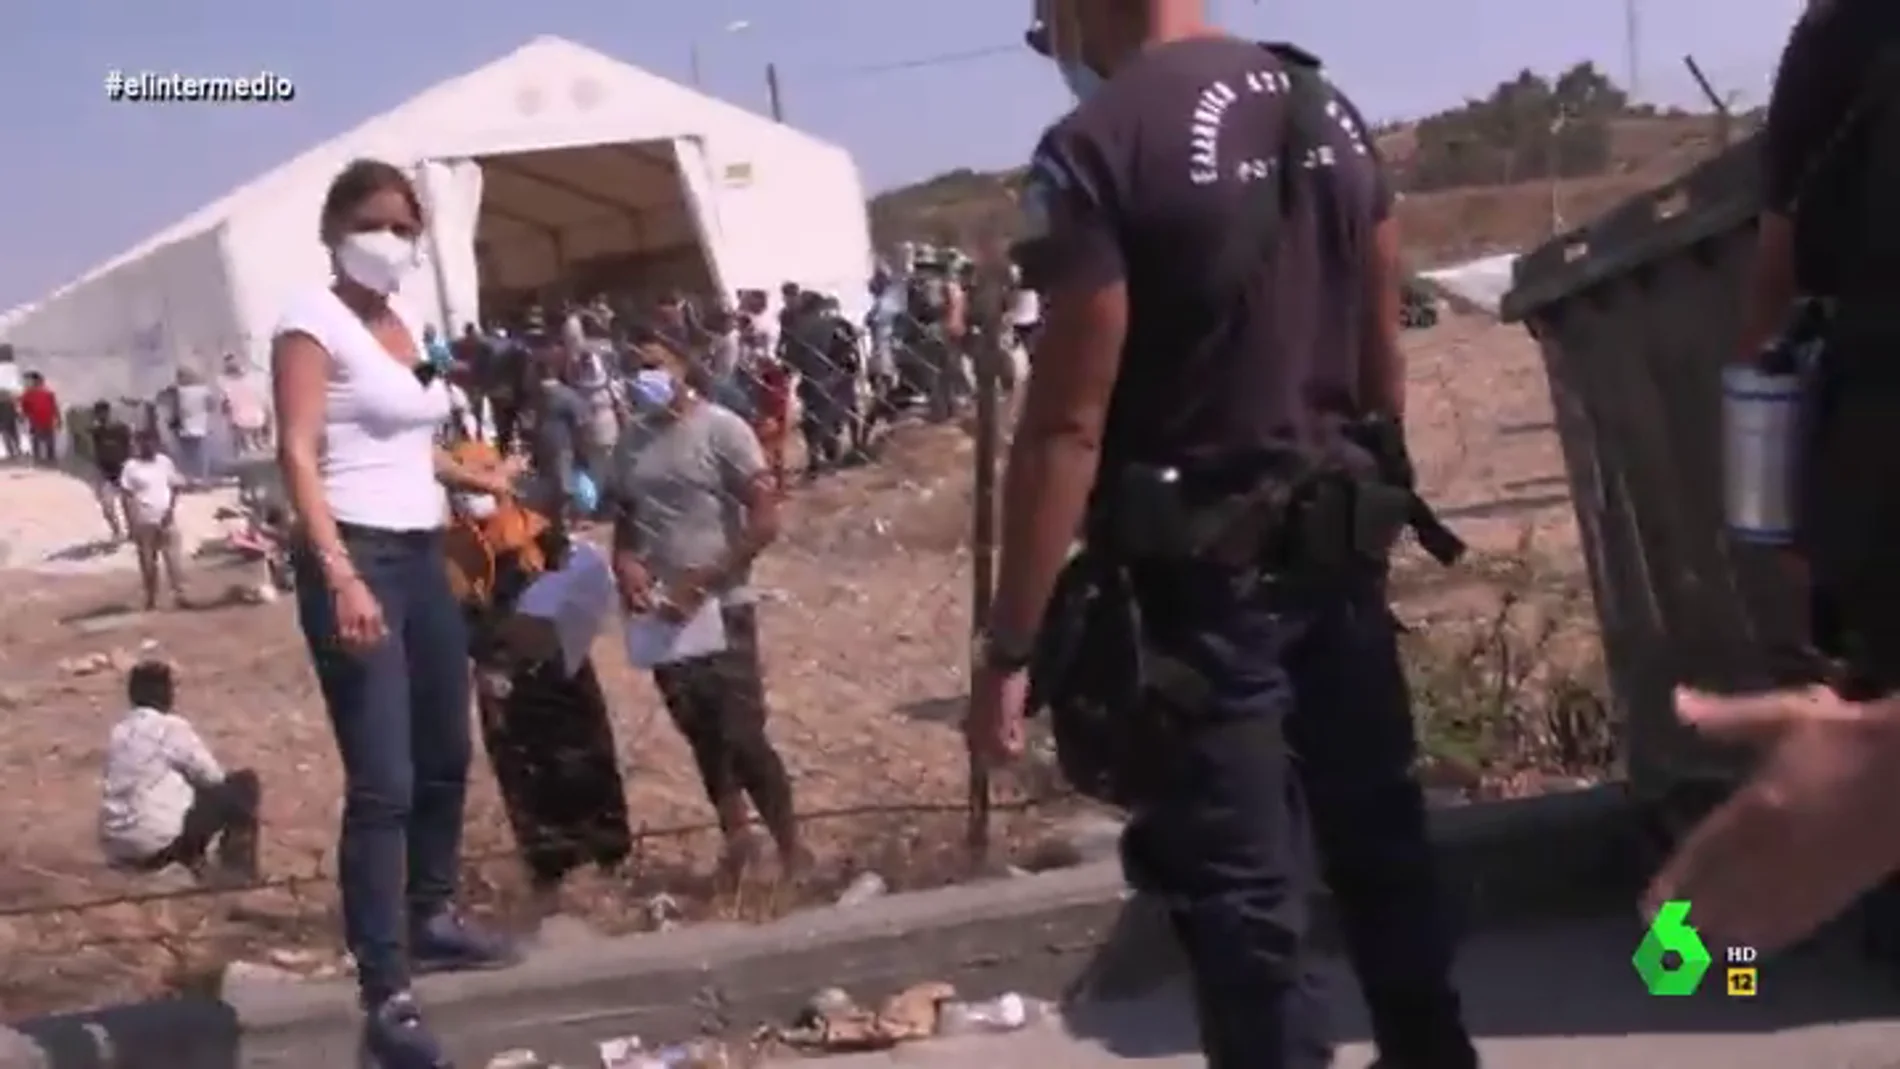 El momento en el que la Policía griega evita que Andrea Ropero entreviste a refugiados en un campamento: "¿Qué pasa?, nos echan"